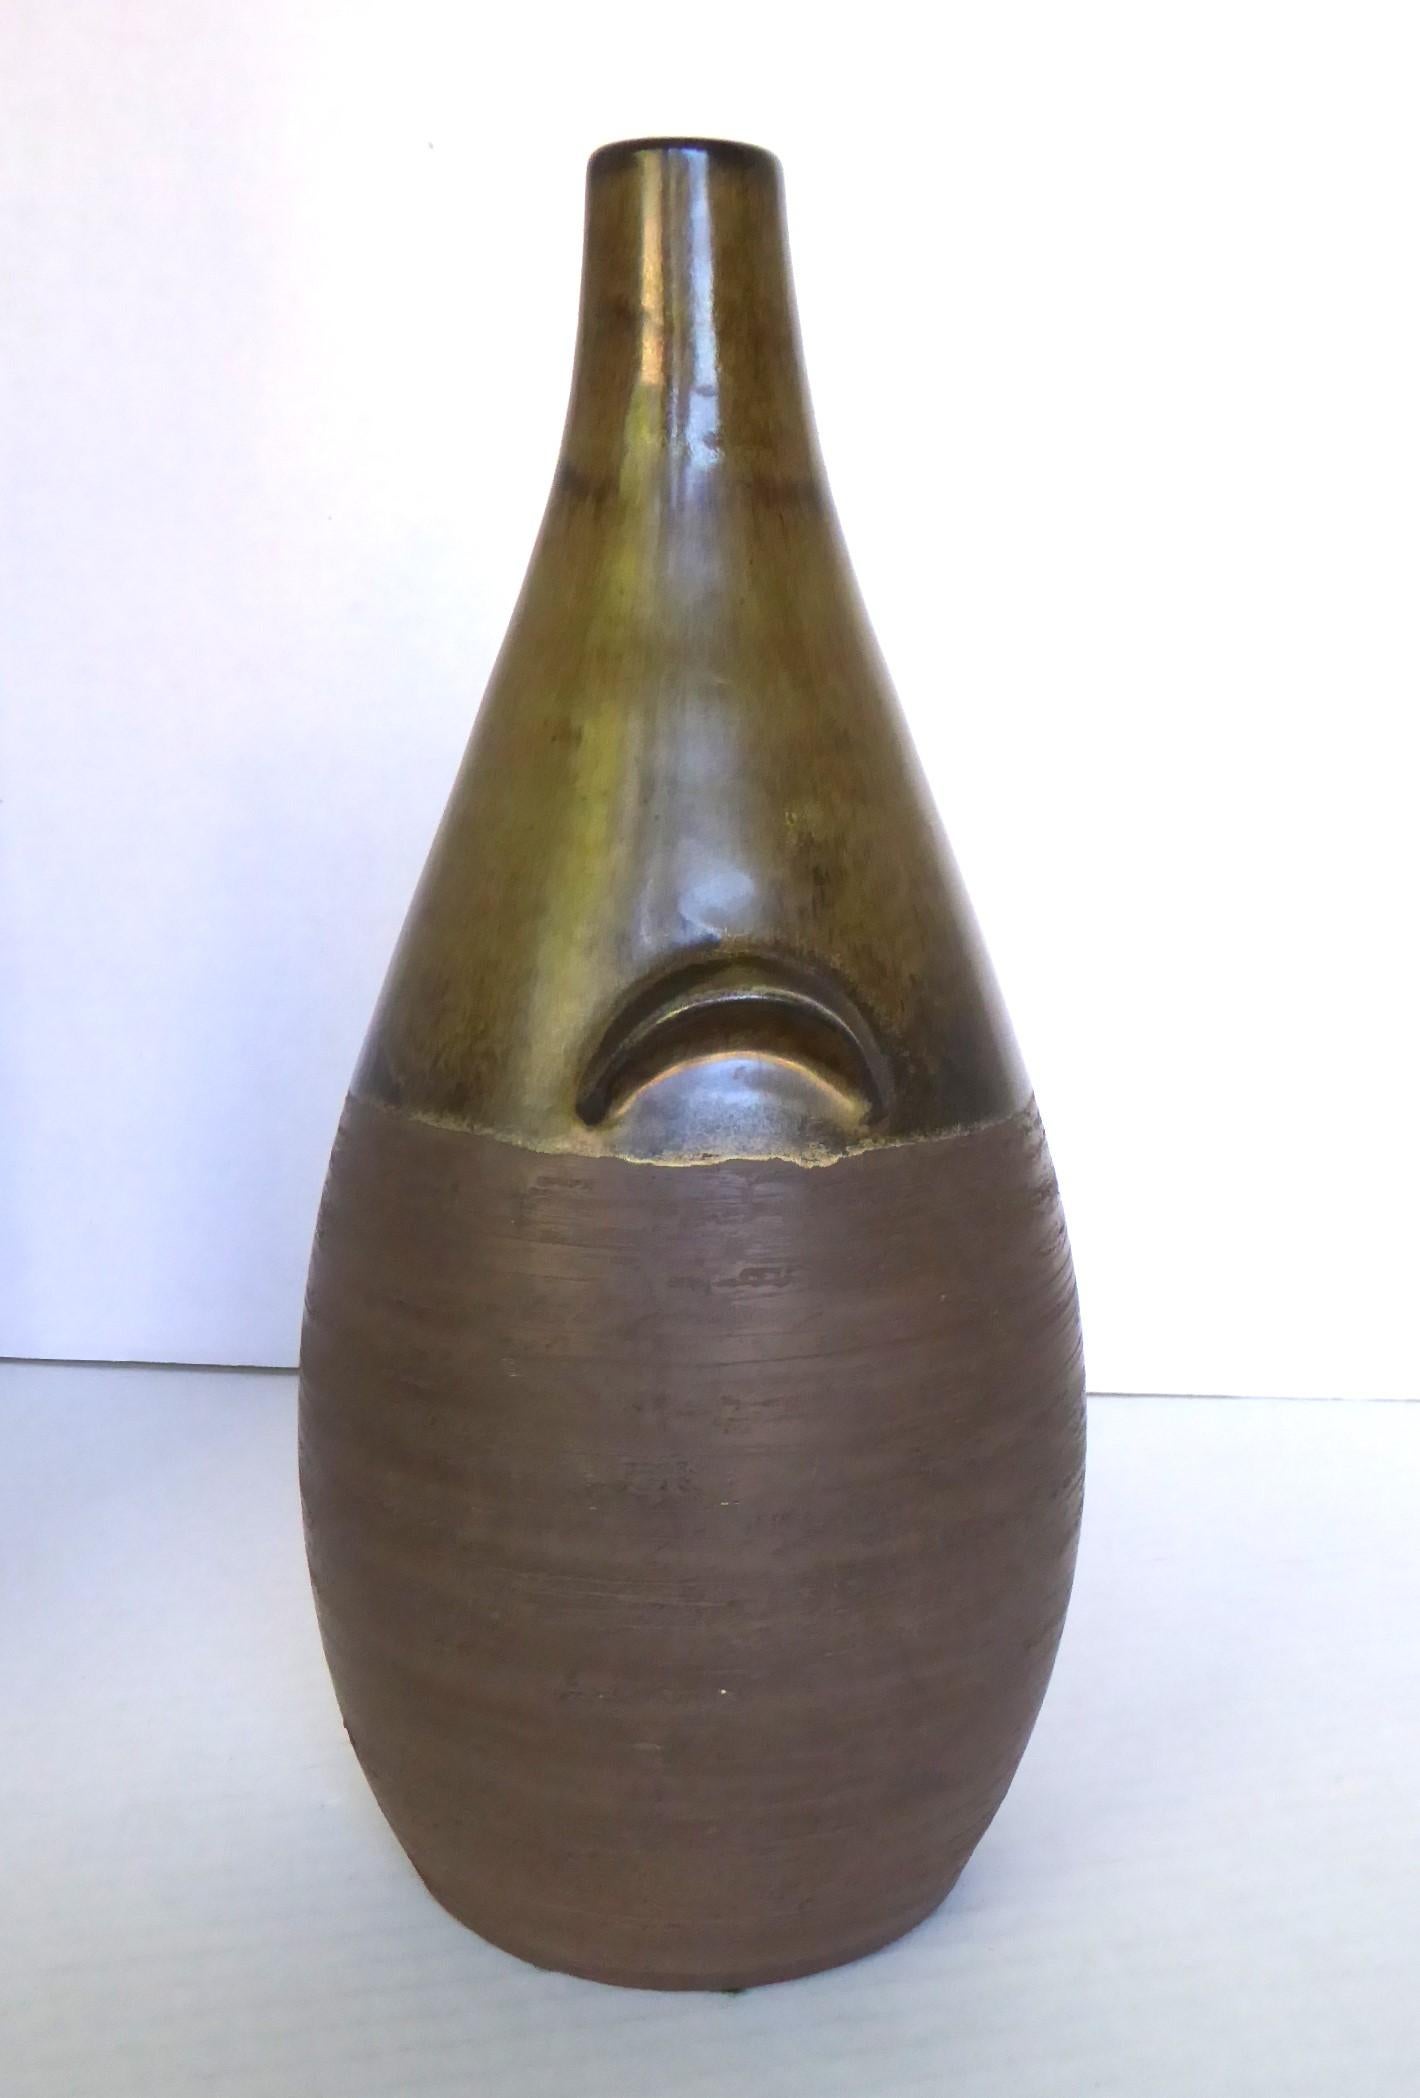 Danish (okoko)Scandinavian Mid Century Modern Pottery Bottle Vase from BR Denmark 1960s For Sale